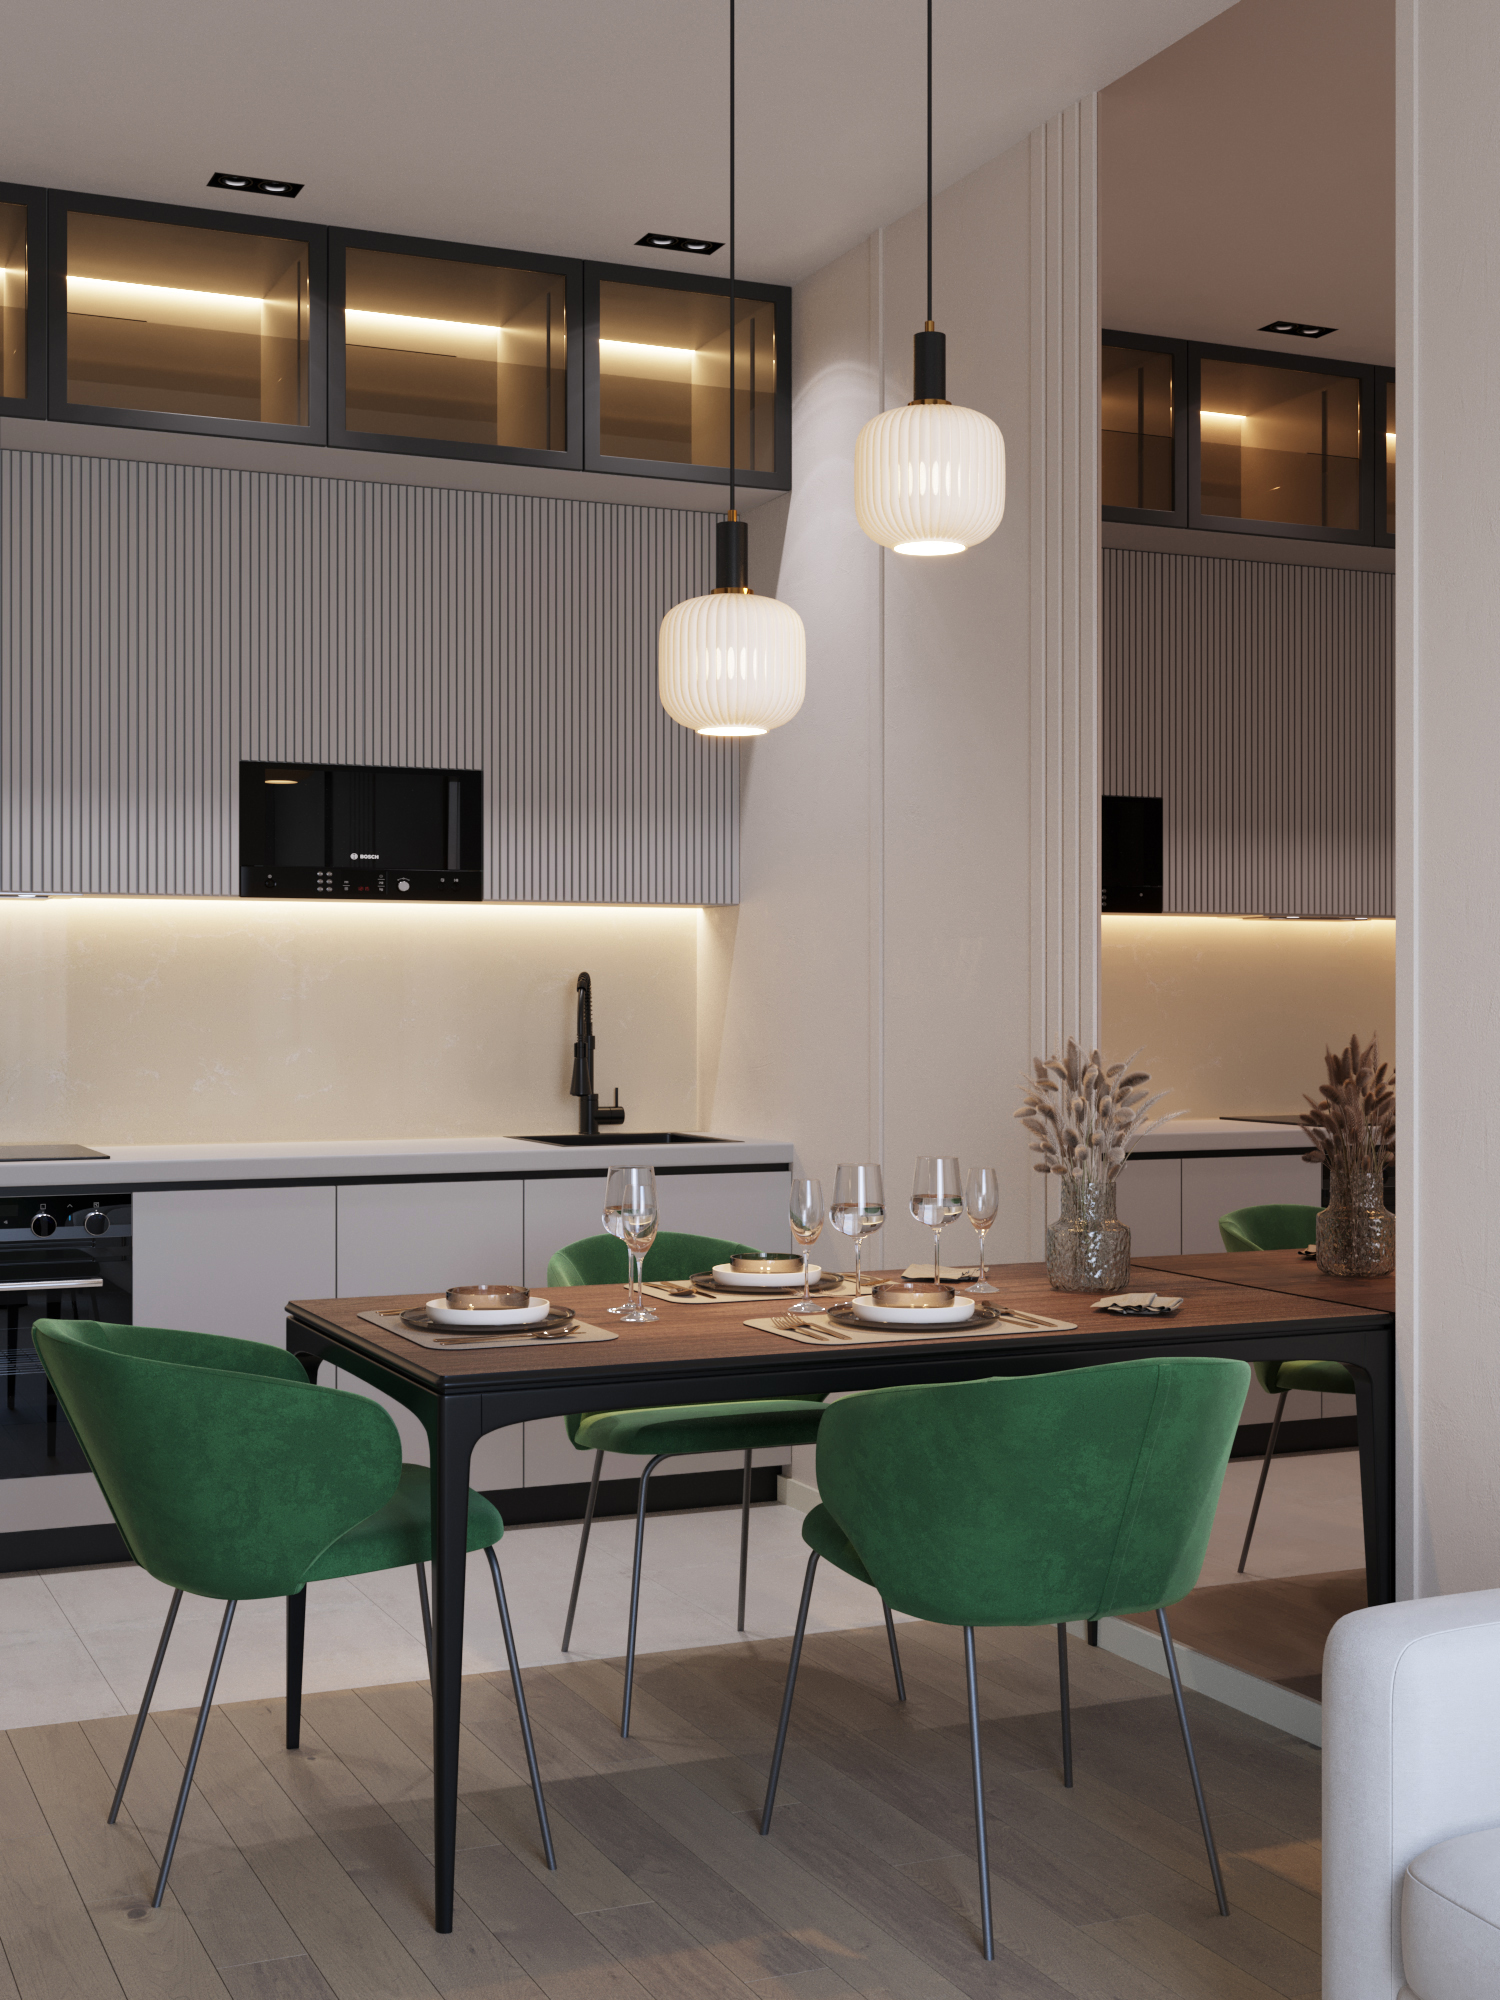 Интерьер кухни гостиной в стиле минимализм